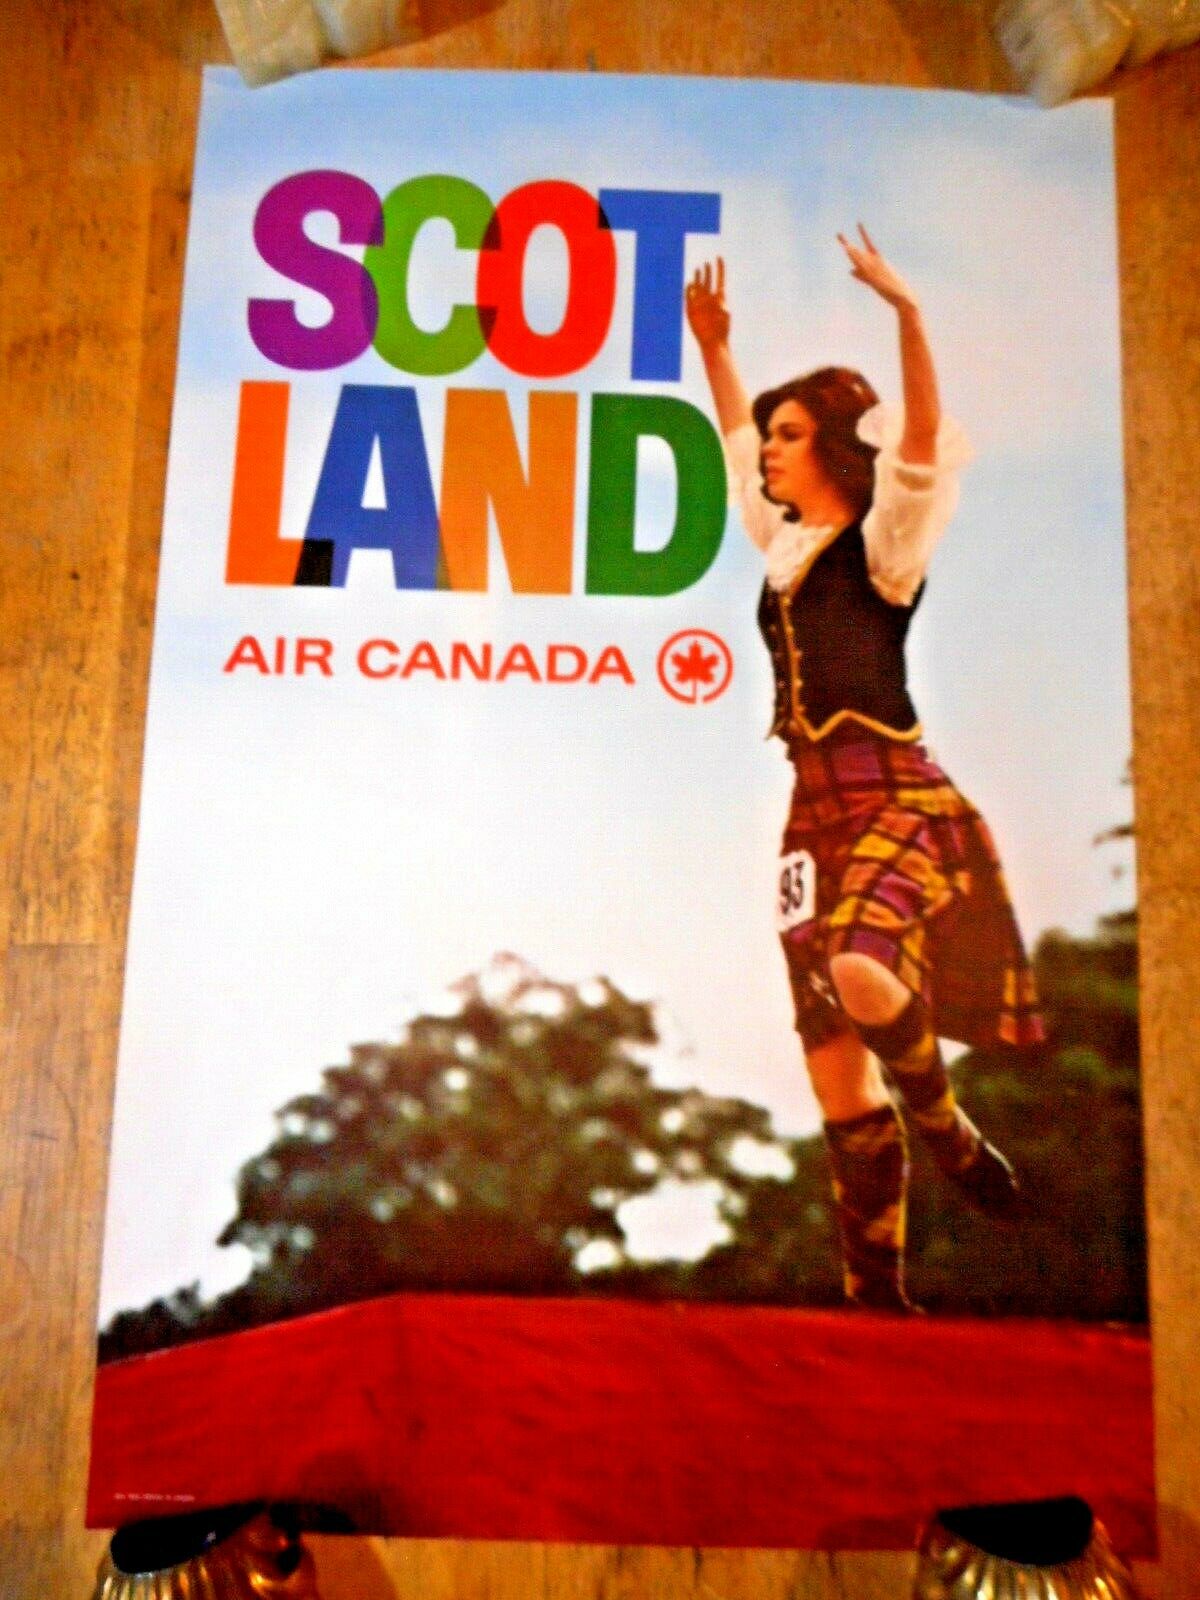 C 1960S SCOTLAND HIGHLAND DANCER AIR CANADA ORIGINAL TOURIST TRAVEL POSTER